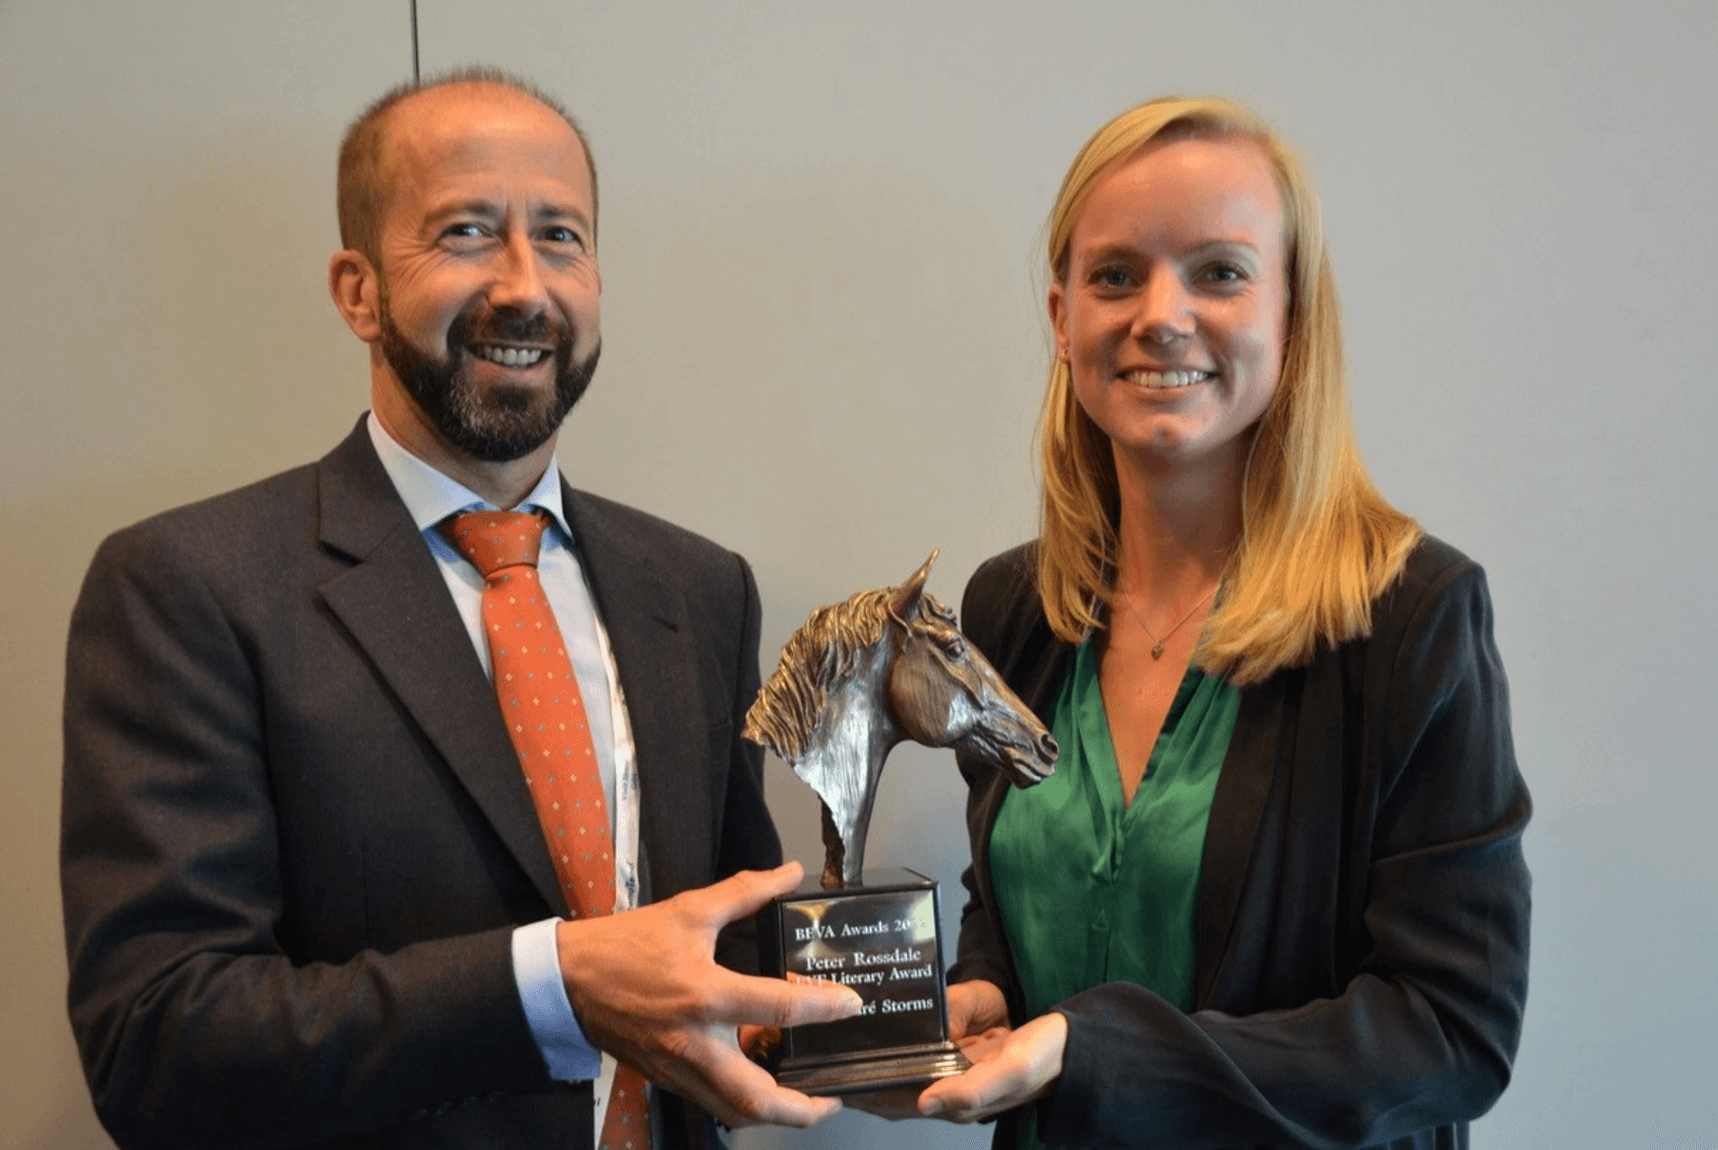 Nazaré Storms, Belgische paardenchirurge, wint topprijs van British Equine Veterinary Association